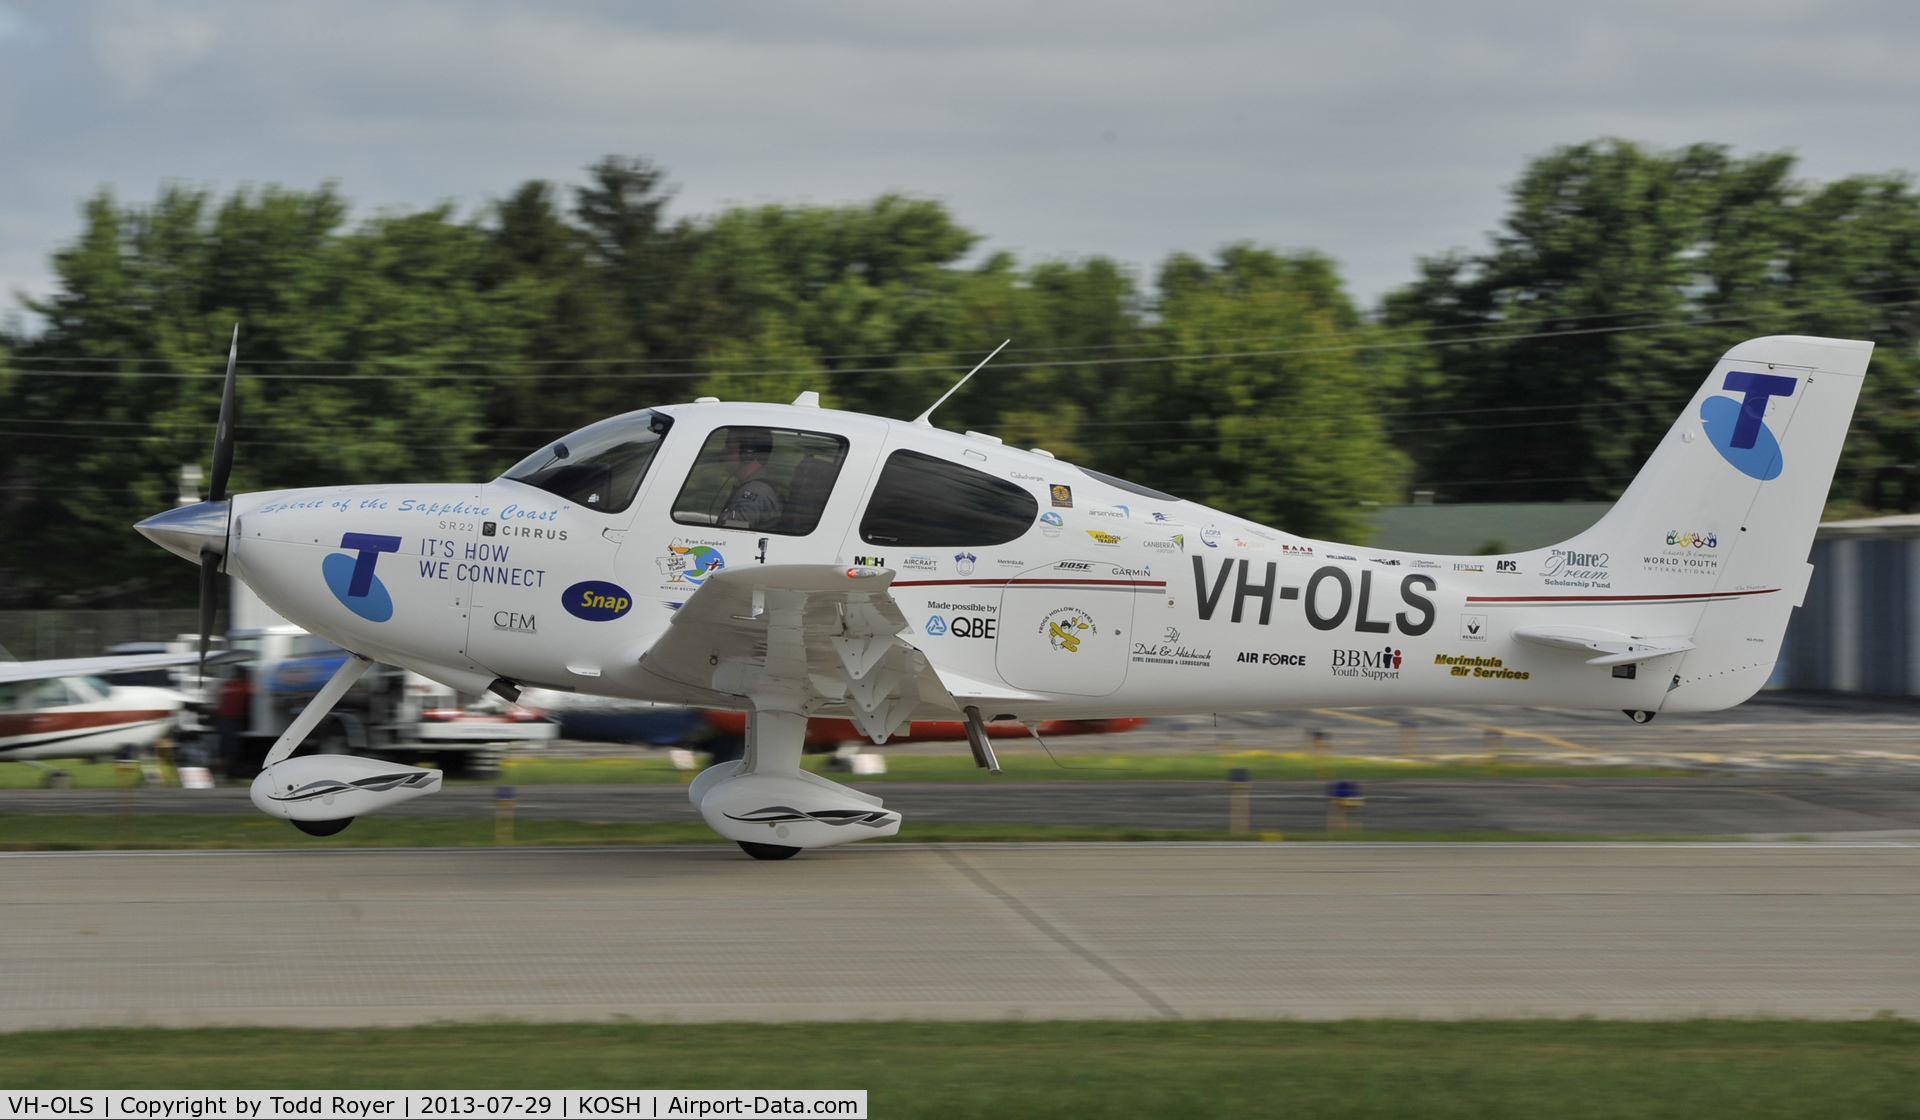 VH-OLS, 2009 Cirrus SR22 C/N 3479, Airventure 2013